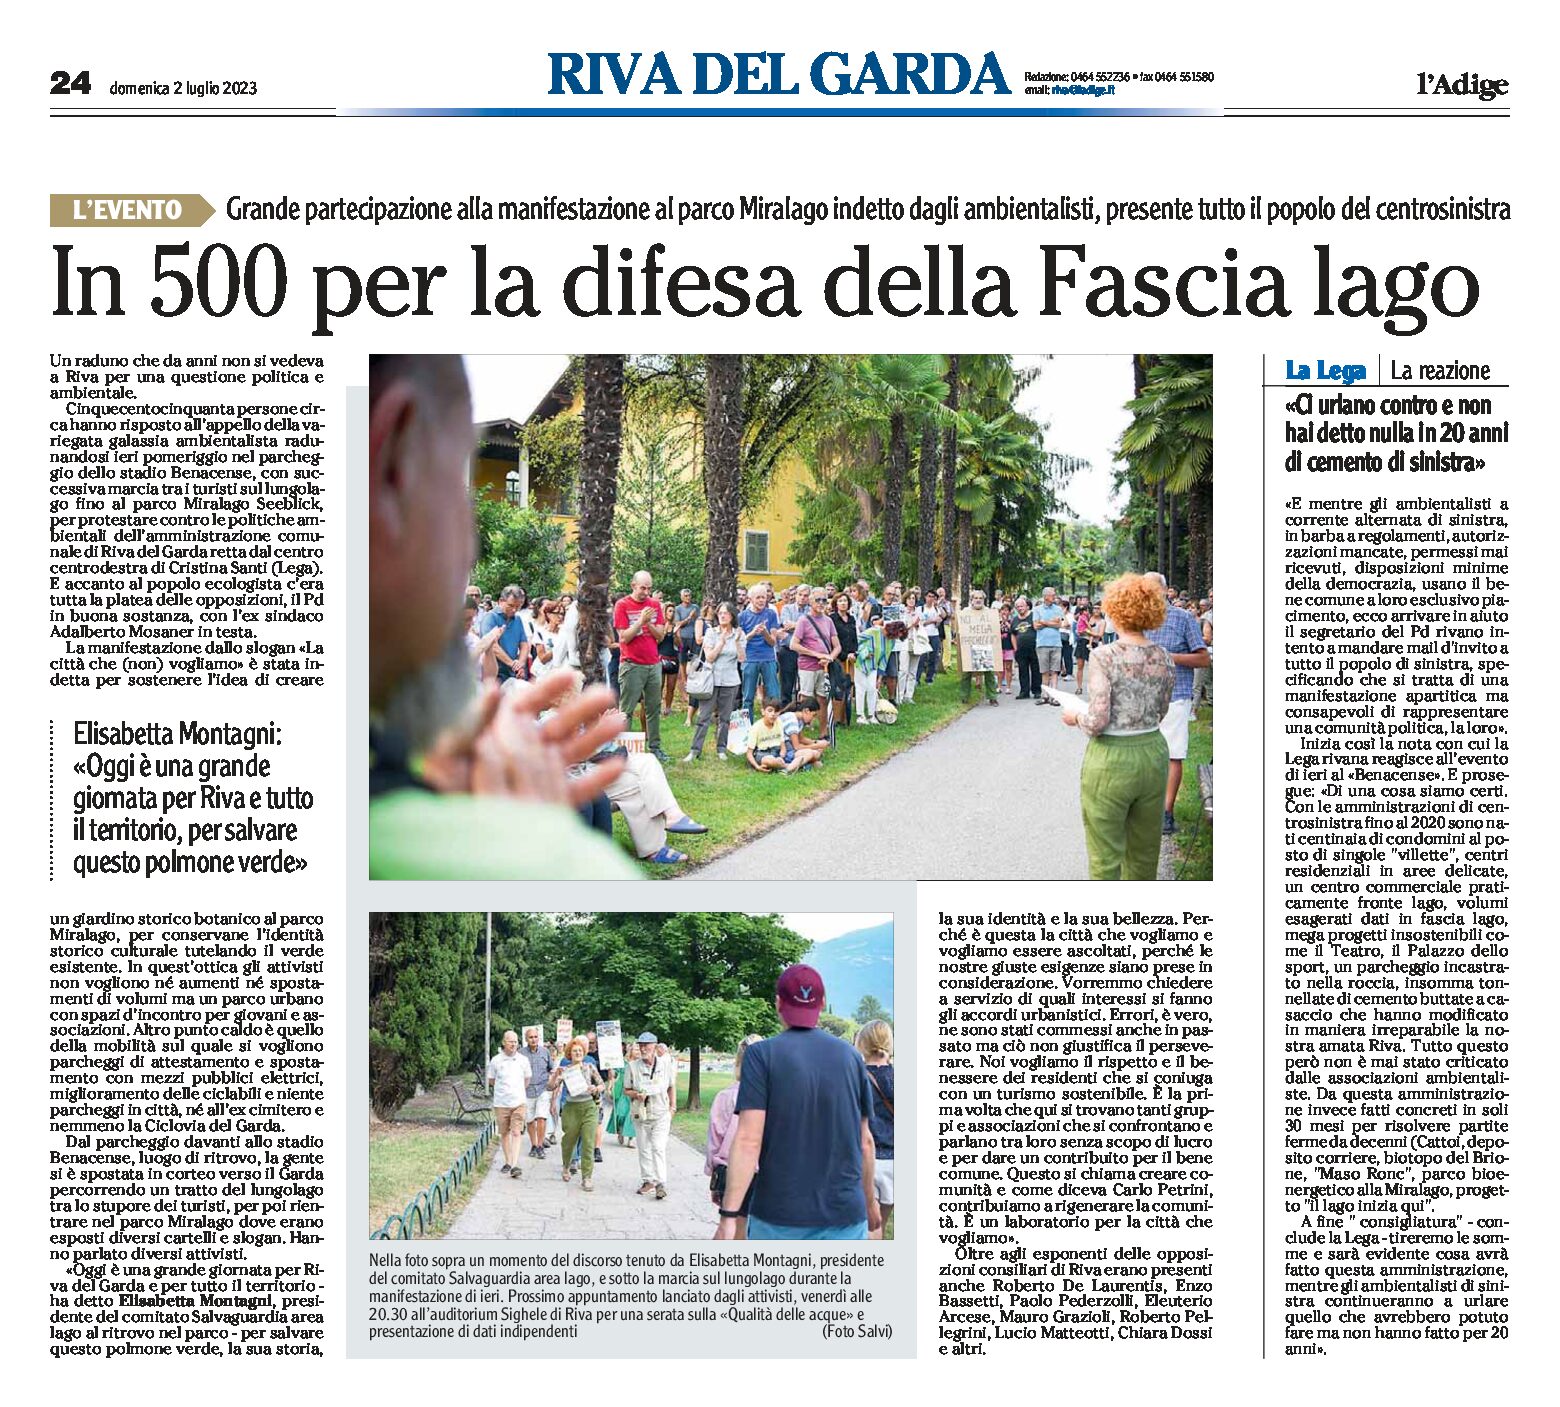 Riva: in 500 per la difesa della fascia lago